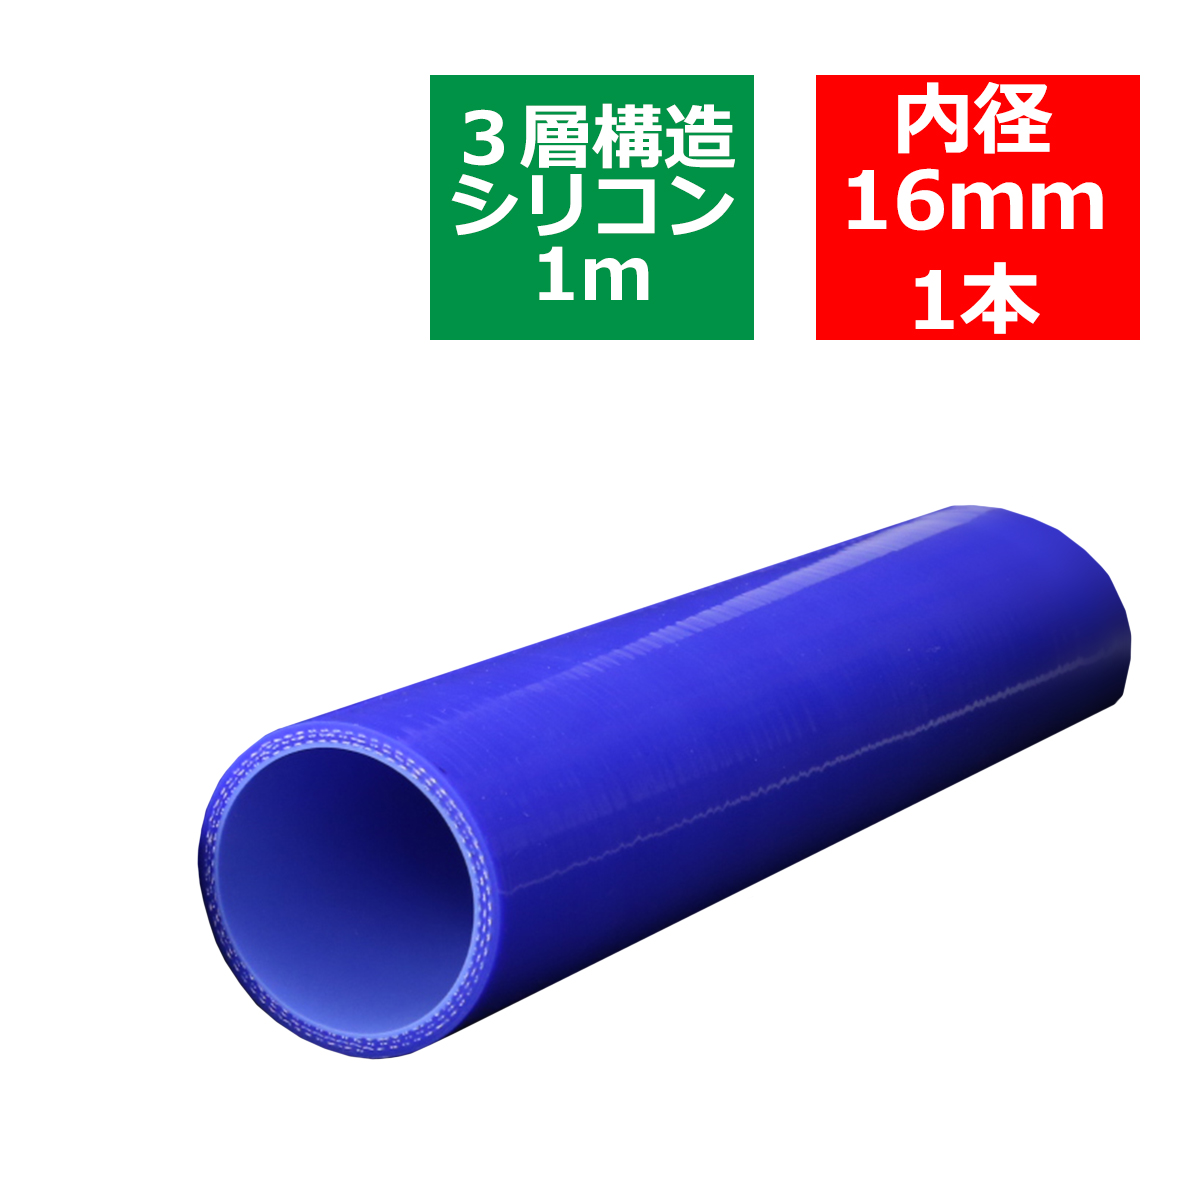 汎用シリコンホース 1m長尺ストレート 内径 16Φ 16mm ブルー 3層構造